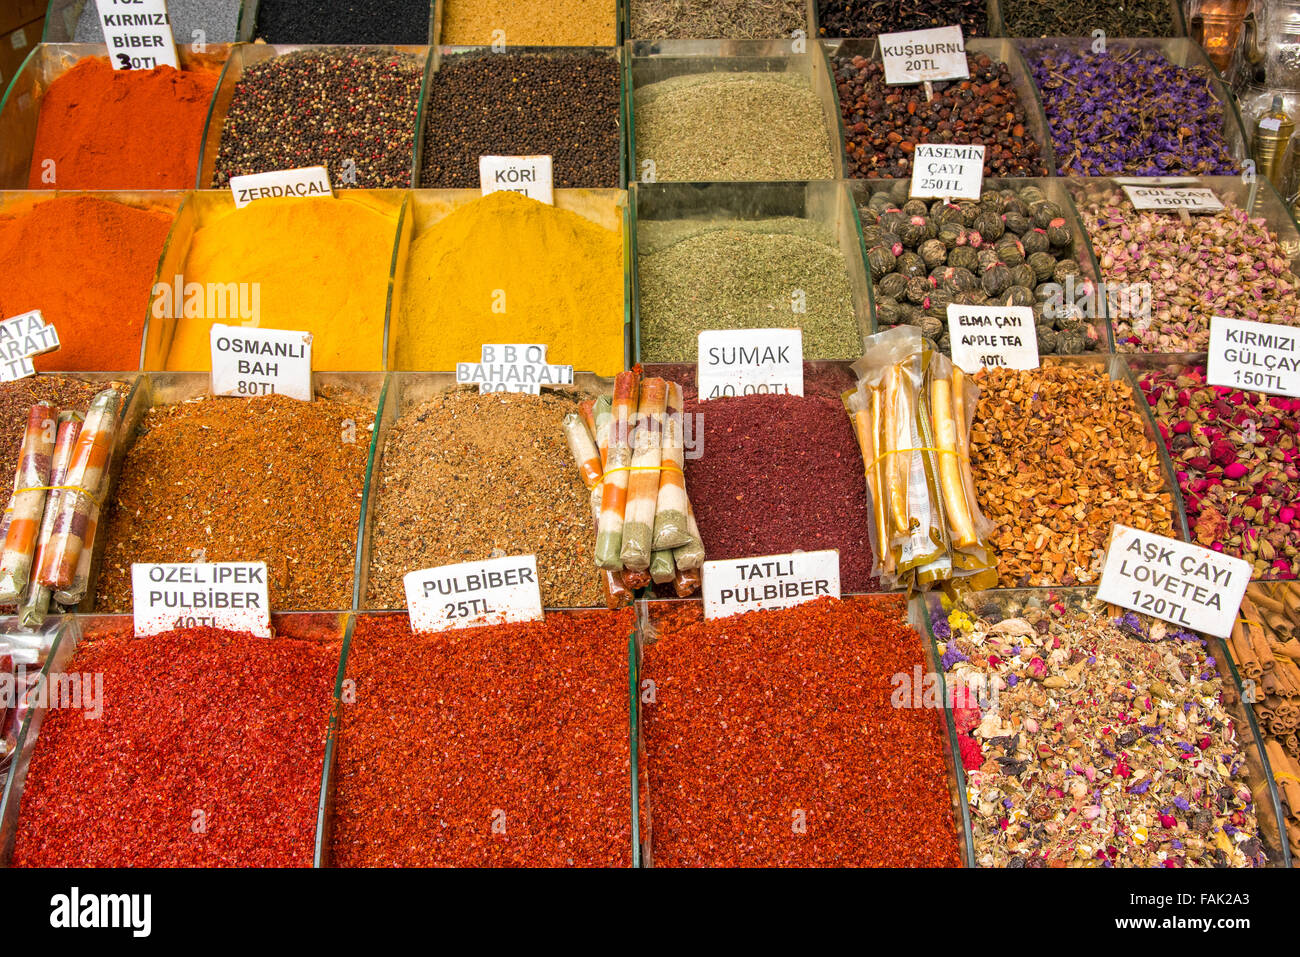 Gewürze und Tees an der Gewürzmarkt in Istanbul, Türkei Stockfotografie -  Alamy